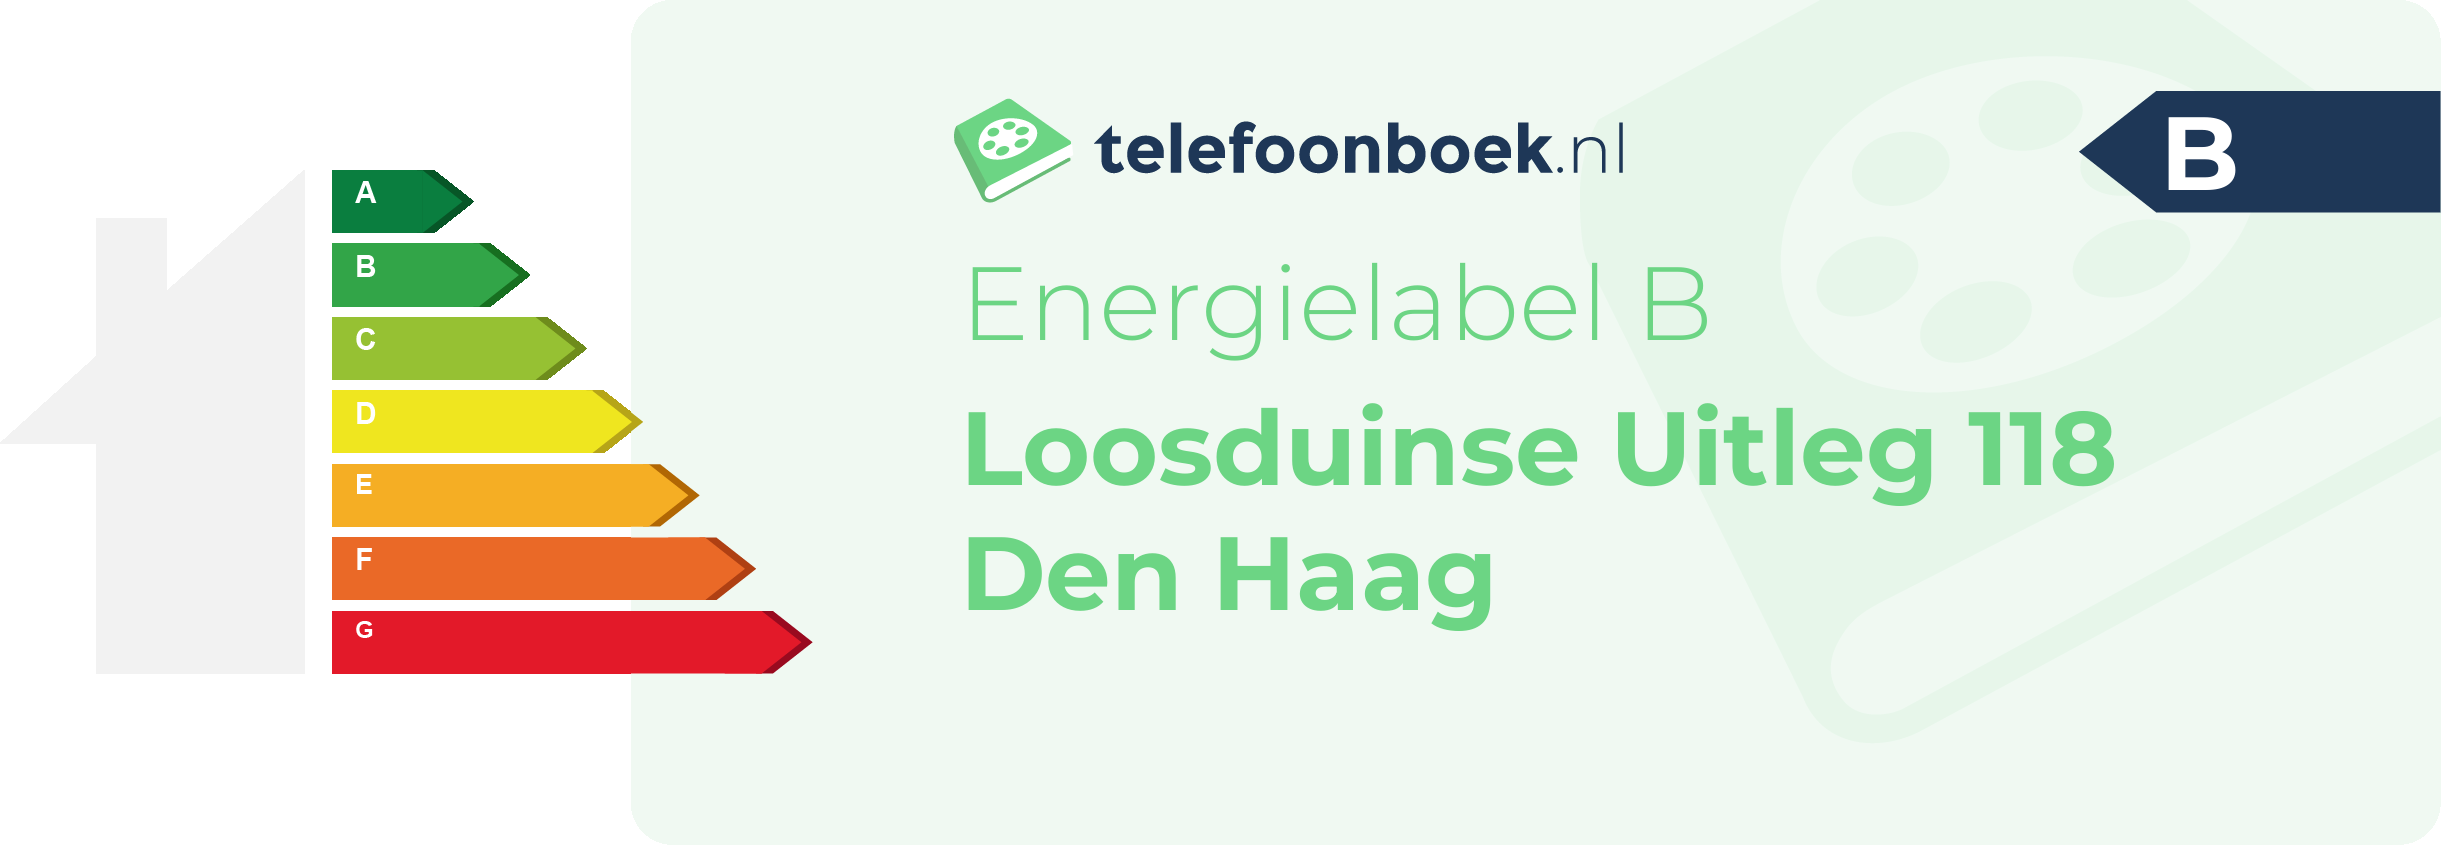 Energielabel Loosduinse Uitleg 118 Den Haag